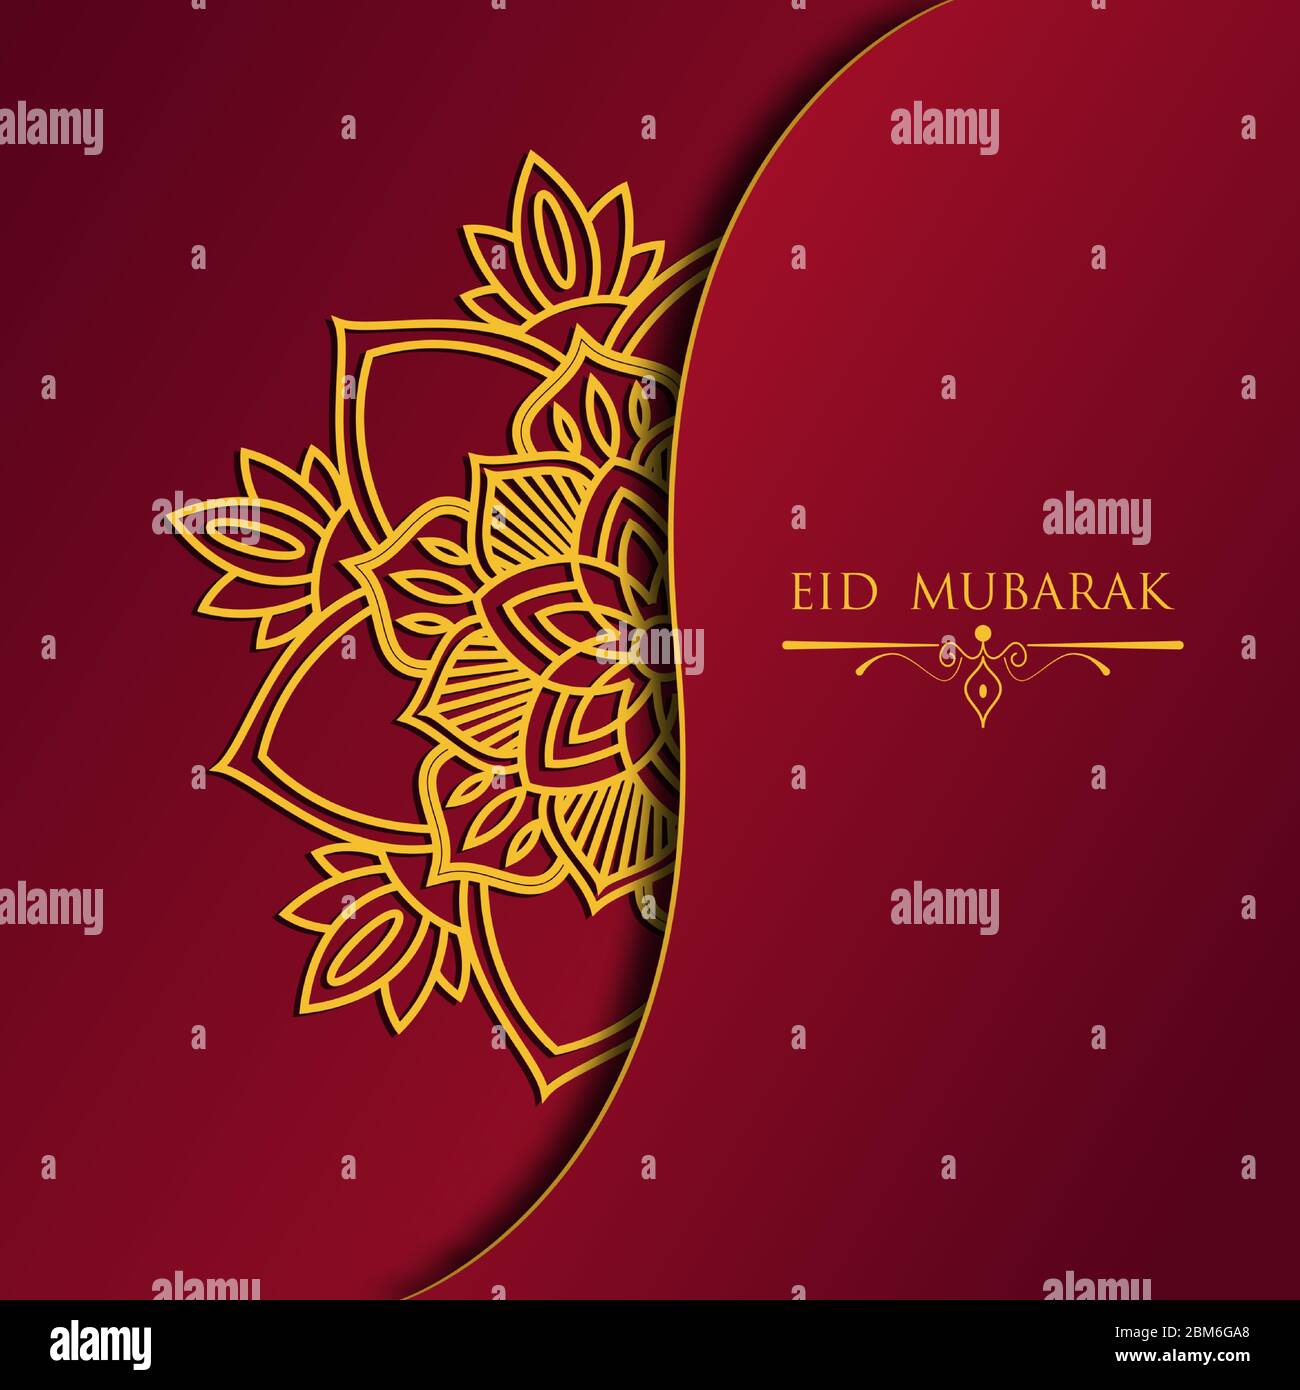 Carte de vœux eid mubarak. Mois de jeûne pour les musulmans. Avec un motif de mandala doré sur une couleur rouge dégradé. Journée du bonheur pour les musulmans Illustration de Vecteur